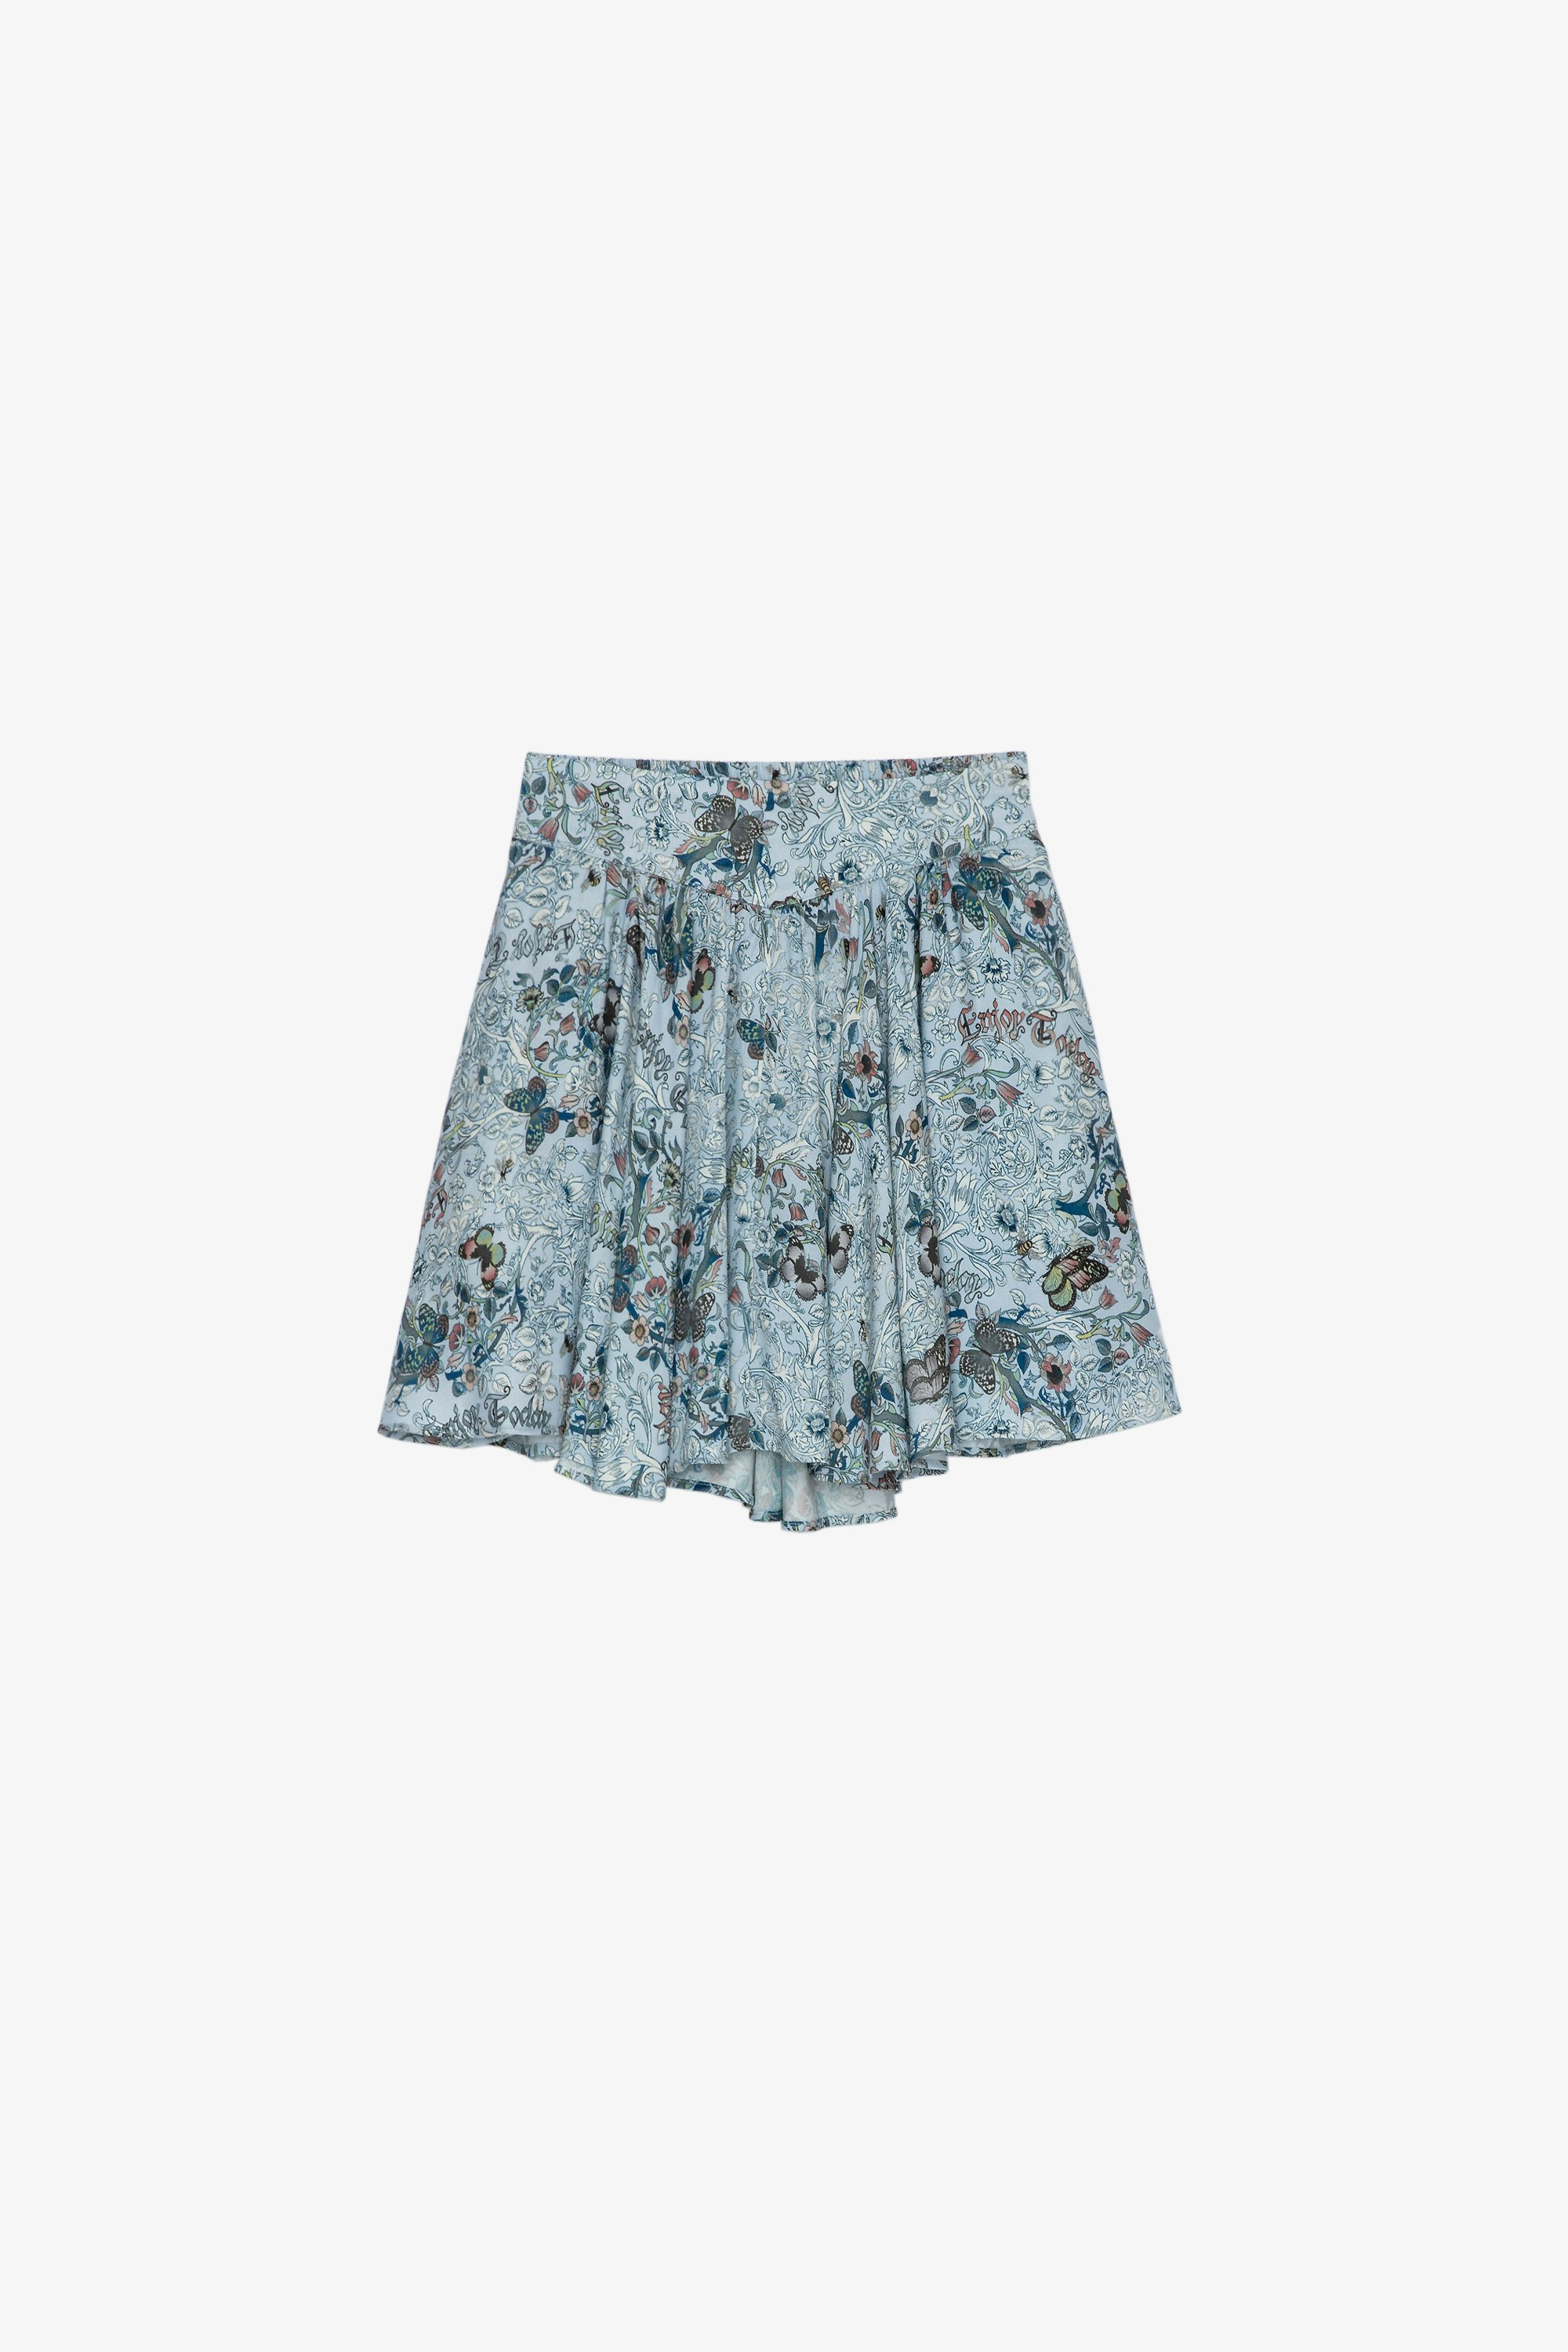 Alexa Kids’ スカート Children’s sky blue printed short skirt 